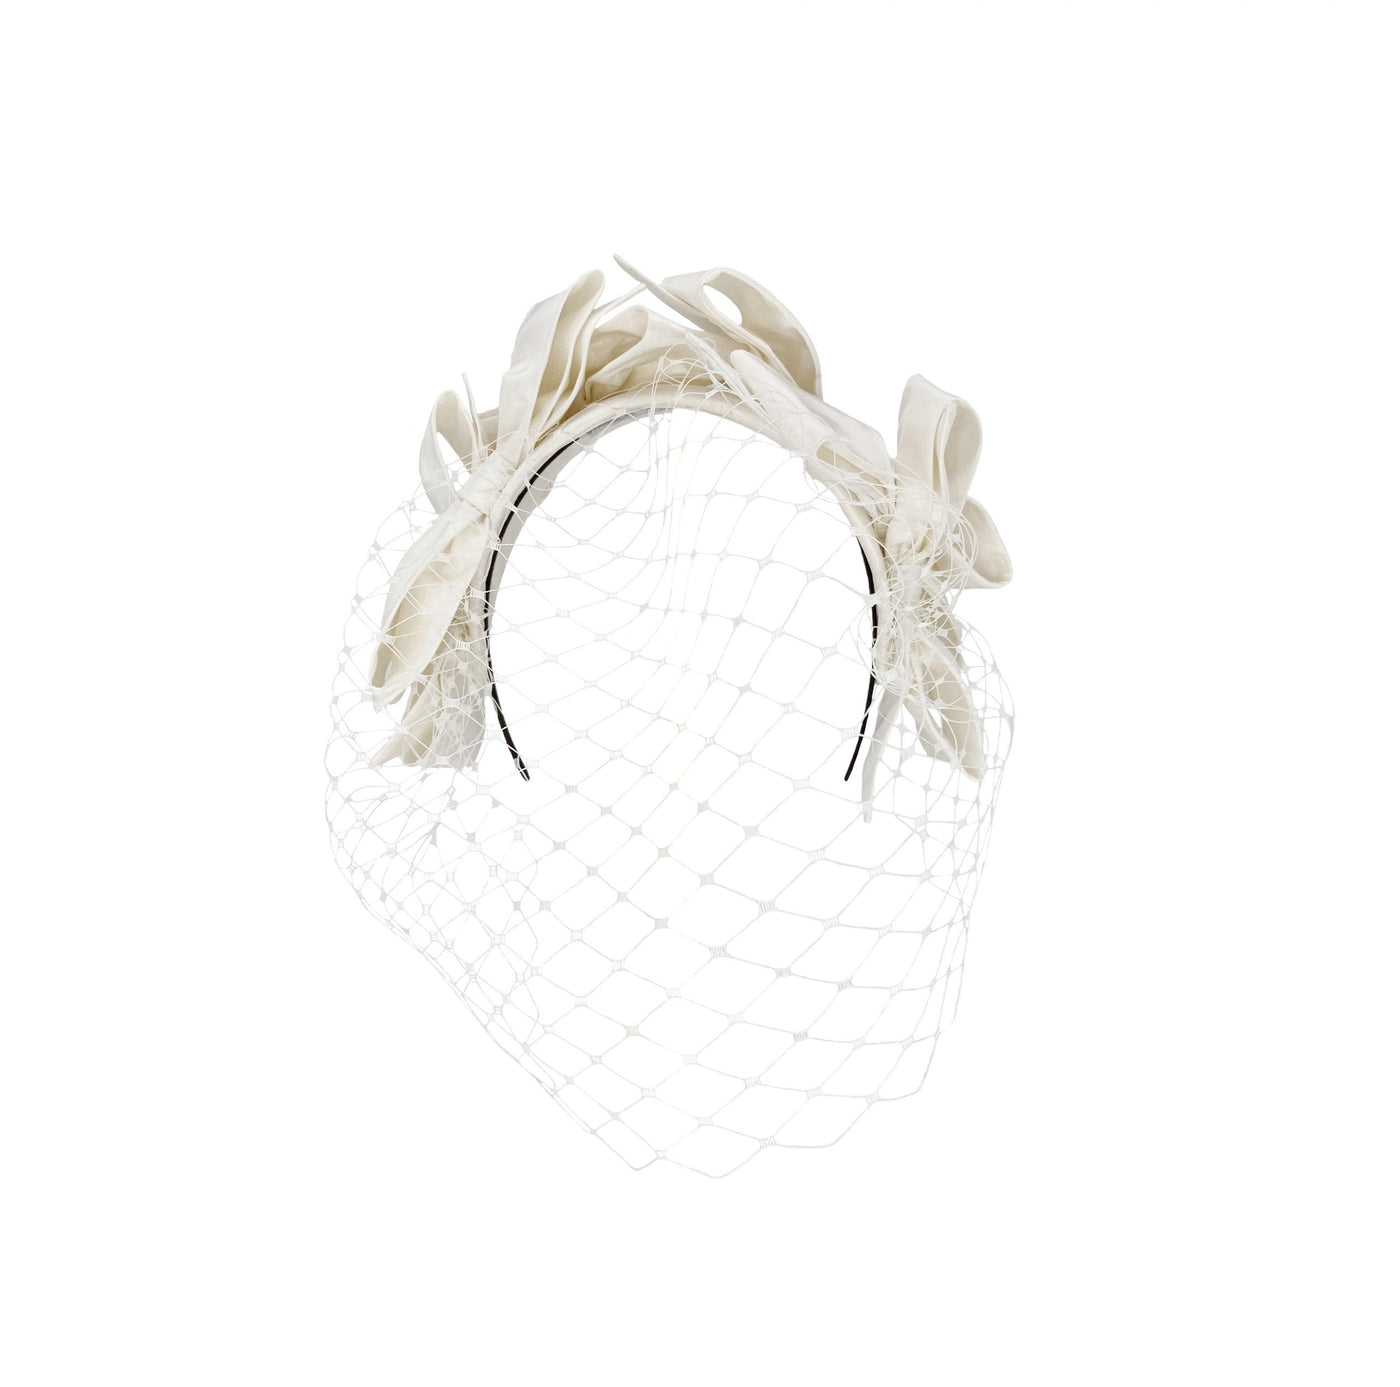 Silk taffeta bow headband with face veil